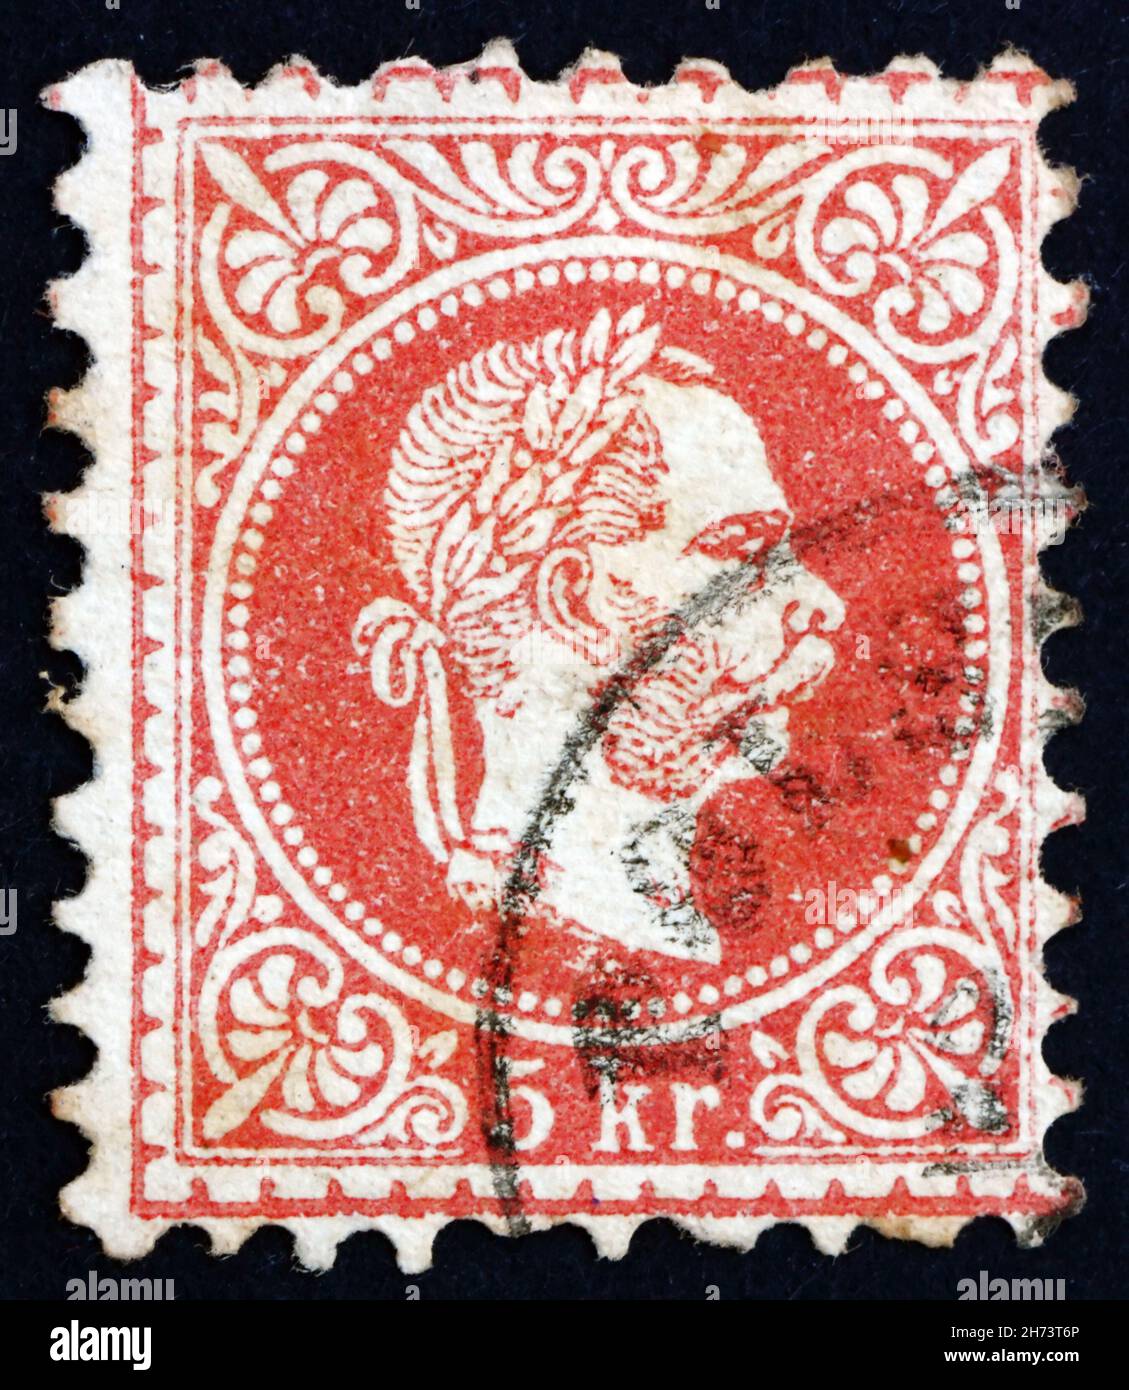 ÖSTERREICH - UM 1872: Eine in Österreich gedruckte Briefmarke zeigt Franz Josef, Kaiser von Österreich, um 1872 Stockfoto